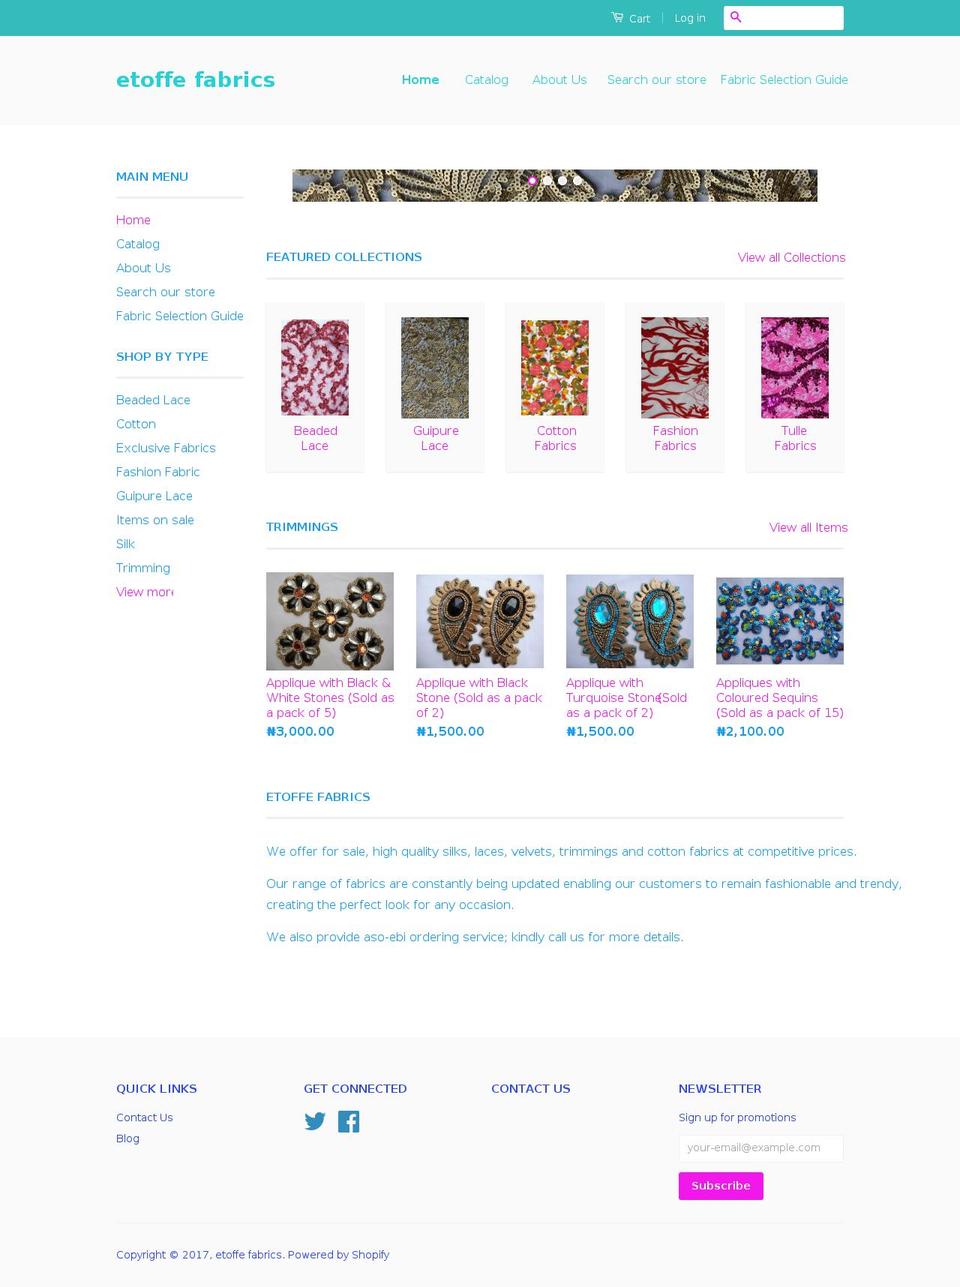 etoffefabrics.com shopify website screenshot